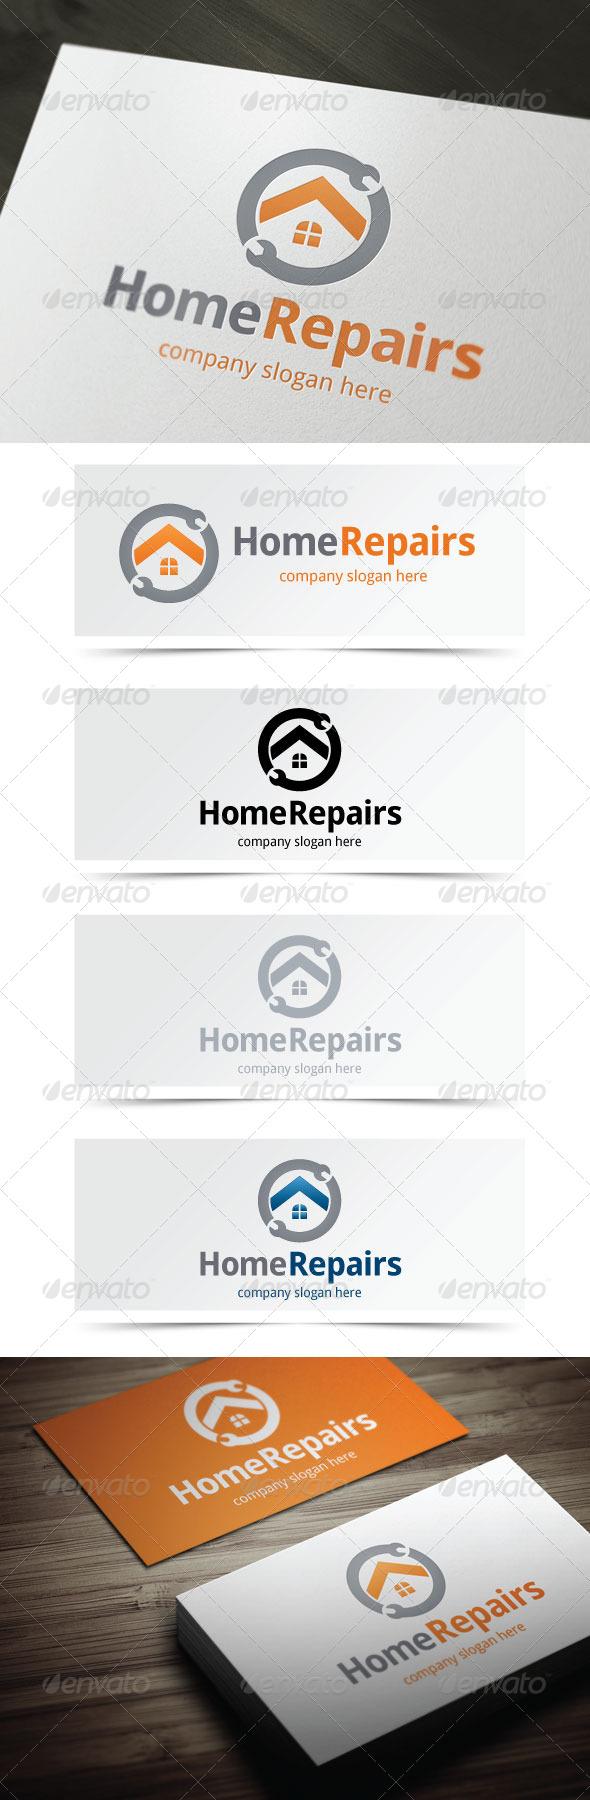 Home Repairs